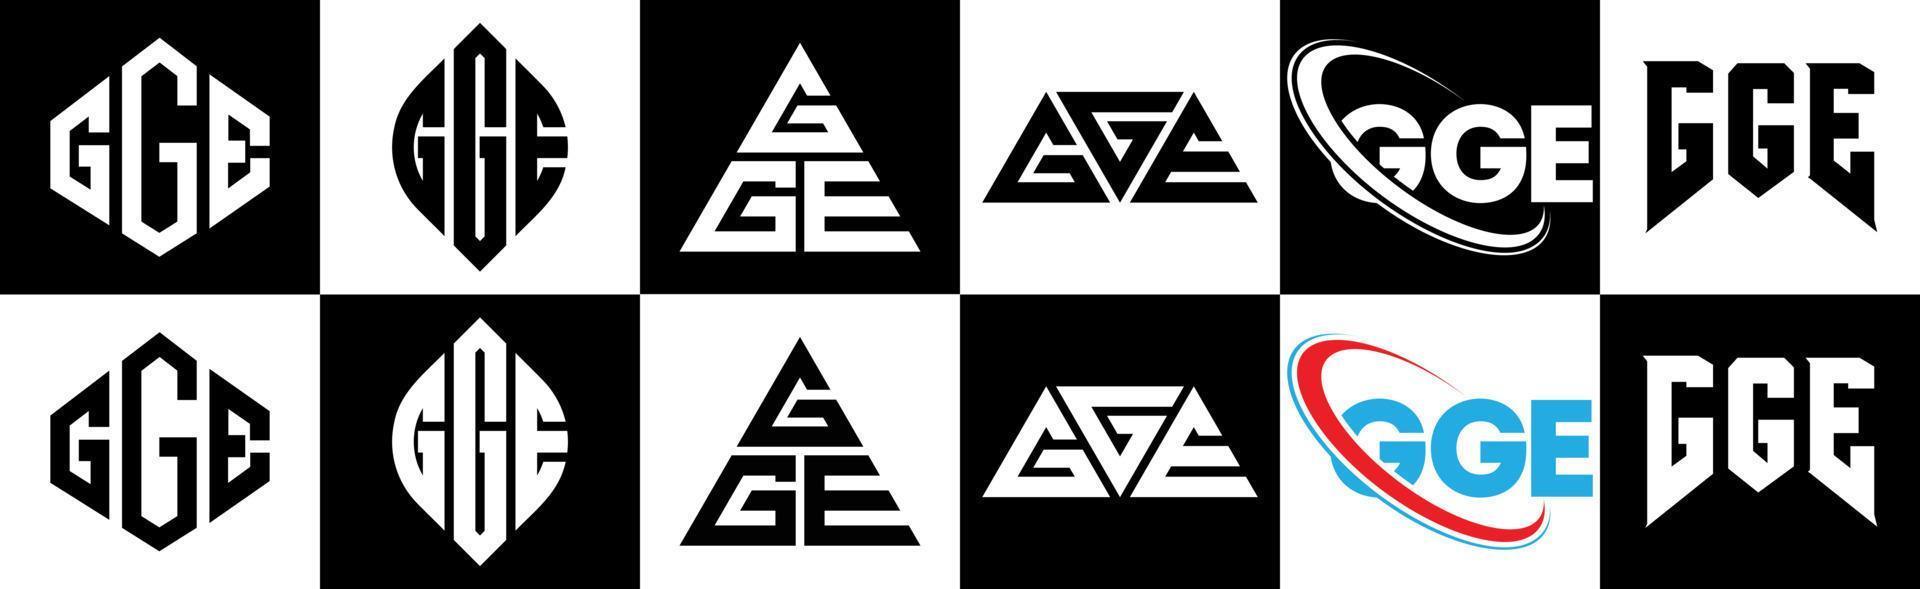 gge-Buchstaben-Logo-Design in sechs Stilen. GGE Polygon, Kreis, Dreieck, Sechseck, flacher und einfacher Stil mit schwarz-weißem Buchstabenlogo in einer Zeichenfläche. gge minimalistisches und klassisches Logo vektor